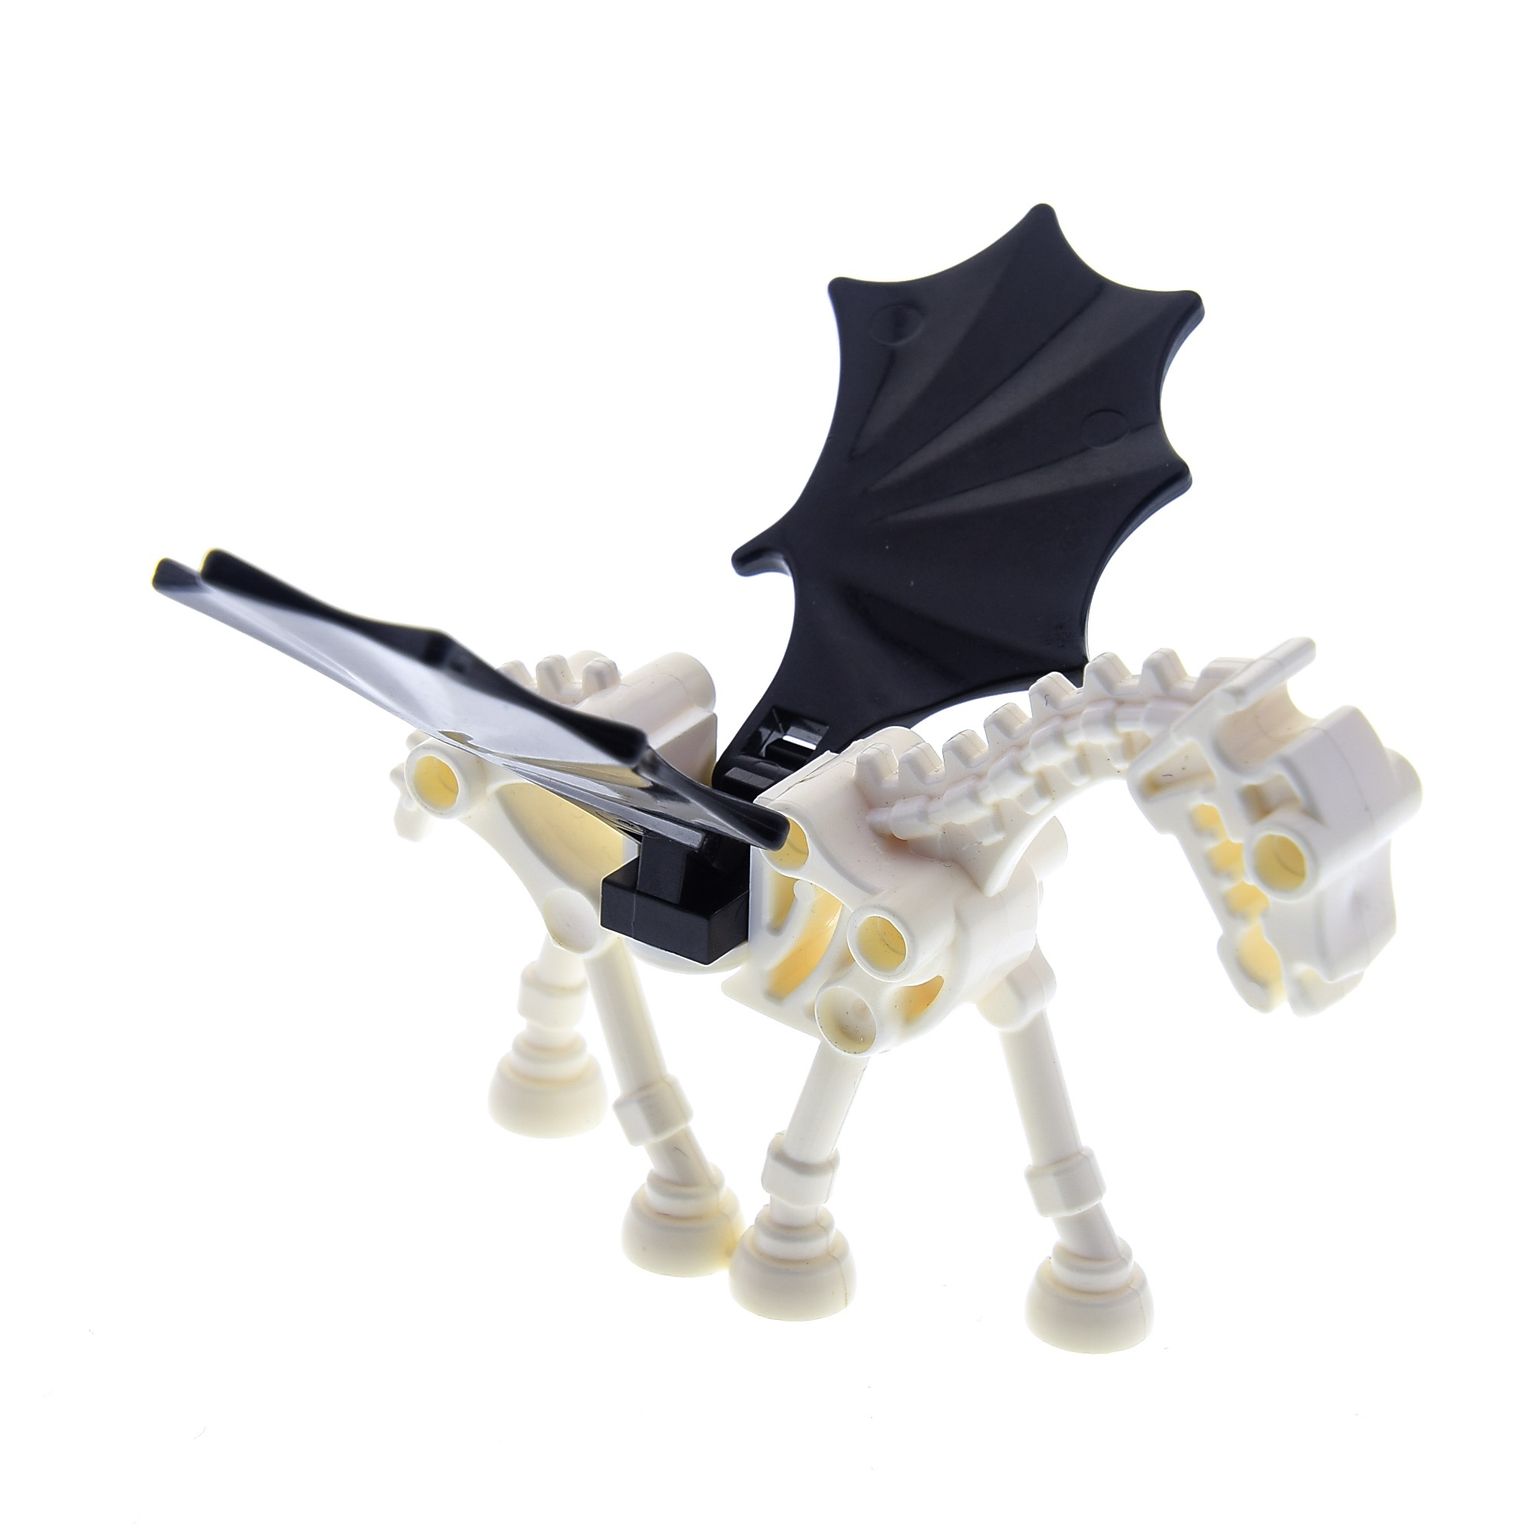 Schwarz-Bedruck Pferd Tier Prince of Persia Lego 